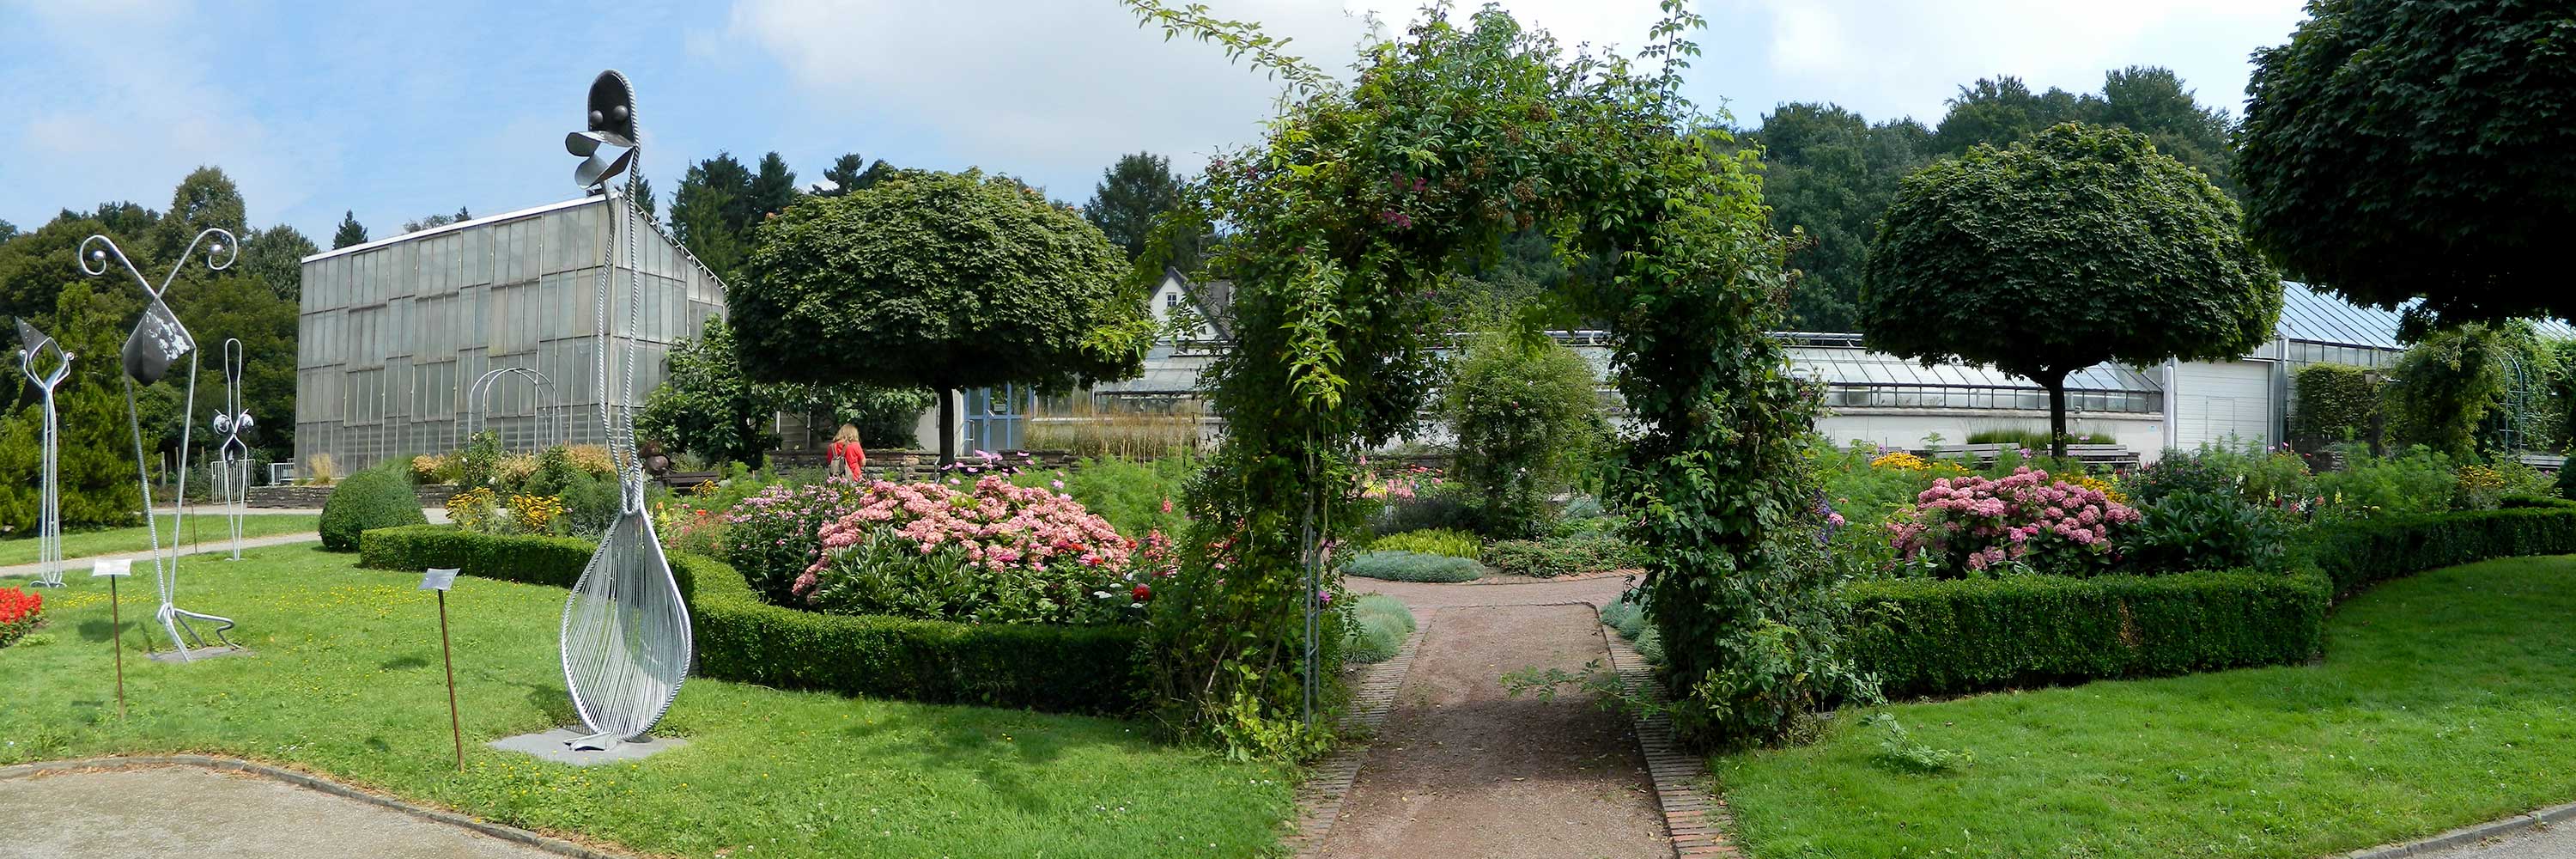 Botanischer Garten Solingen / Das Laurel Hardy Museum Solingen